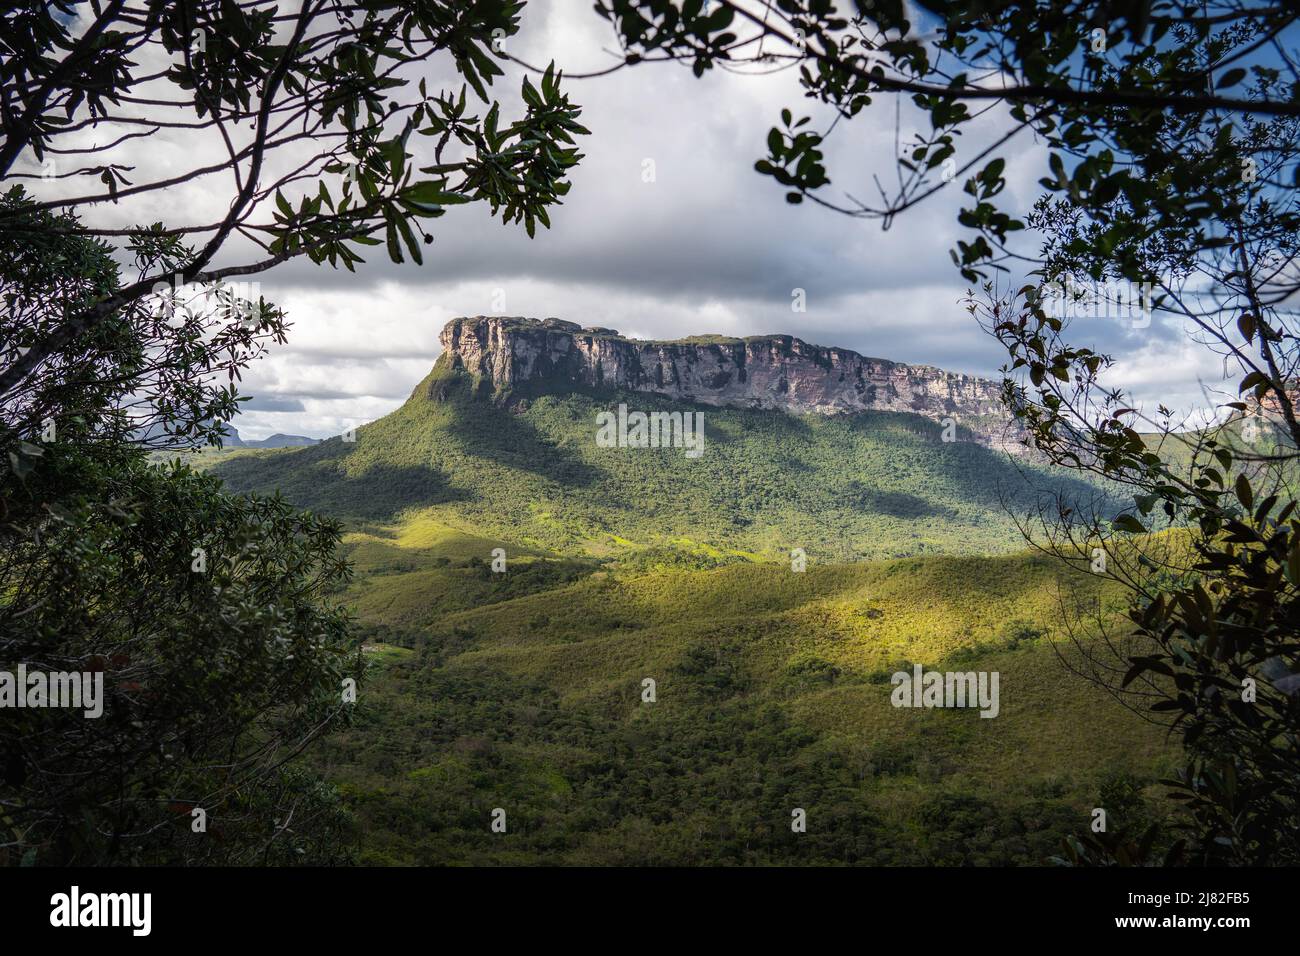 Vale do Pati (Pati Valley), parc national de Chapada Diamantina, Bahia, nord-est du Brésil, Amérique du Sud. Banque D'Images